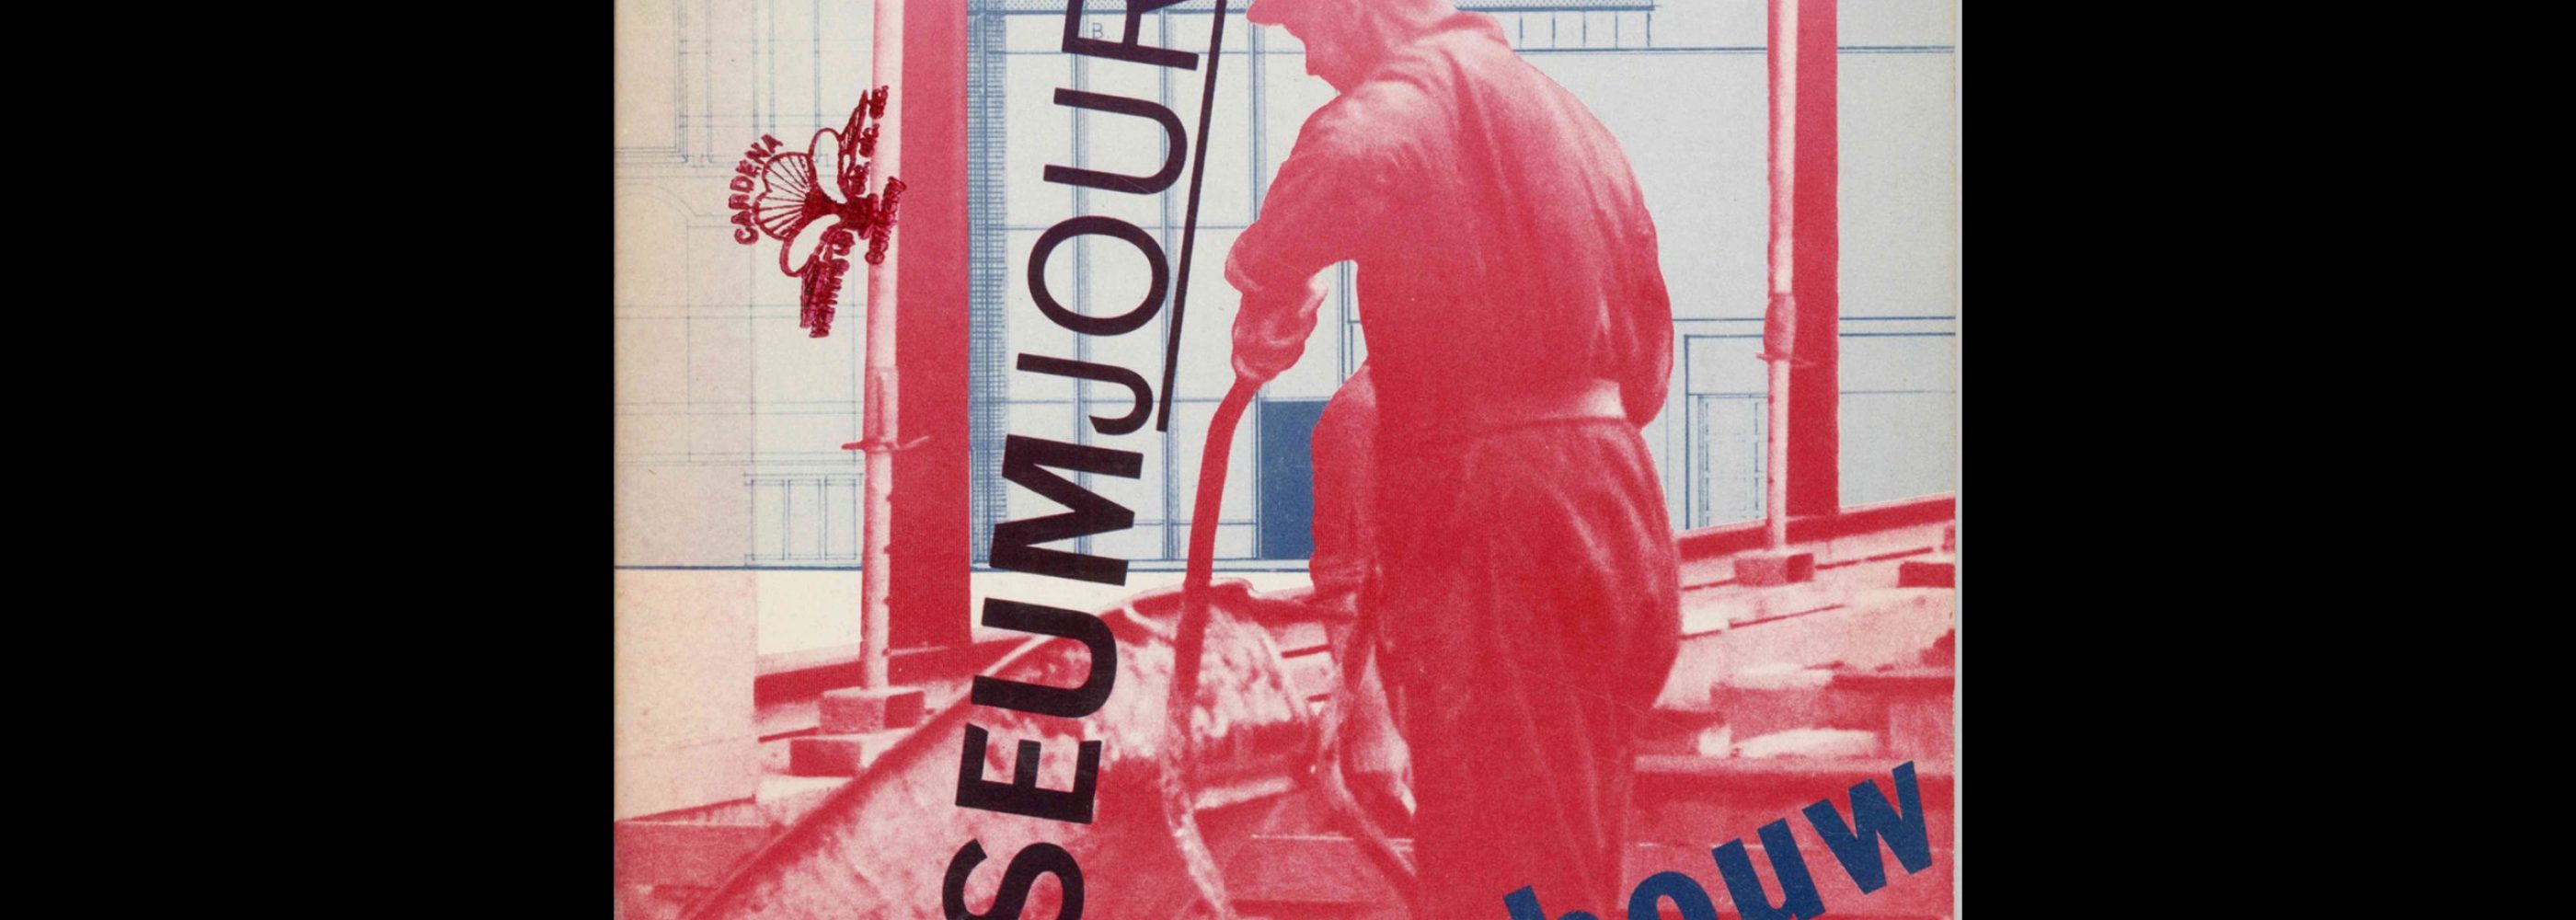 Museumjournaal, Serie 24 no5, 1979. Cover design by Jan van Toorn.